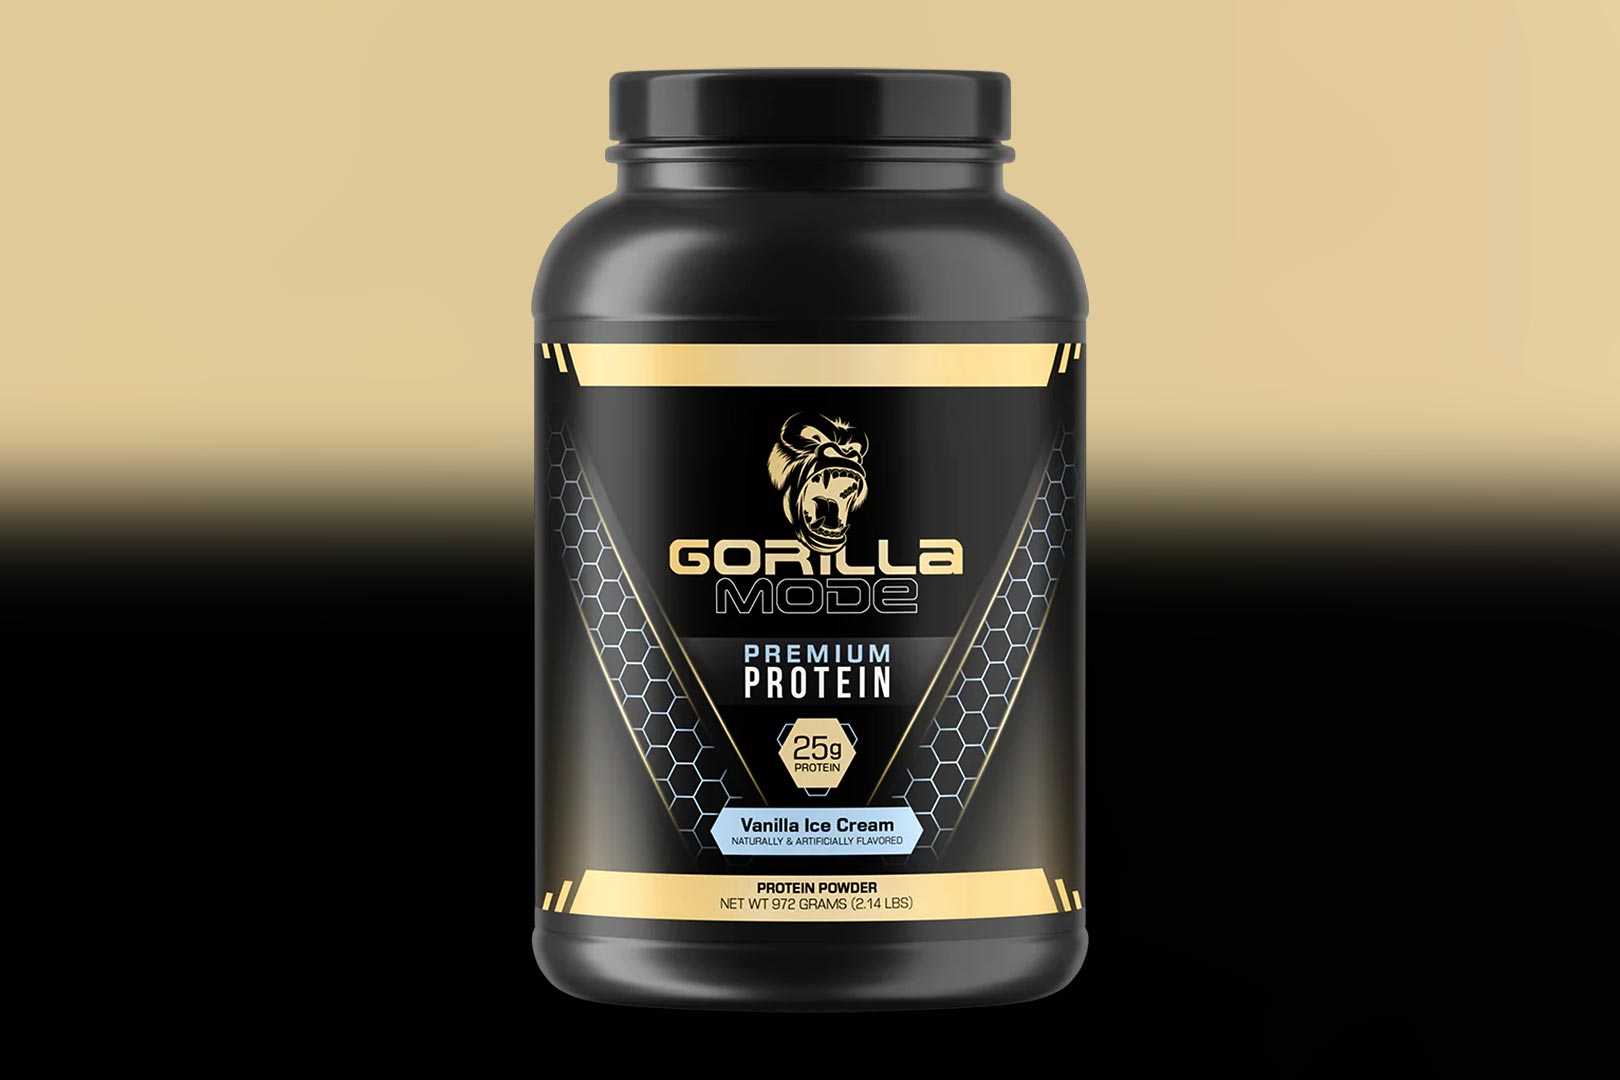 Gorilla Mind Premium Protein